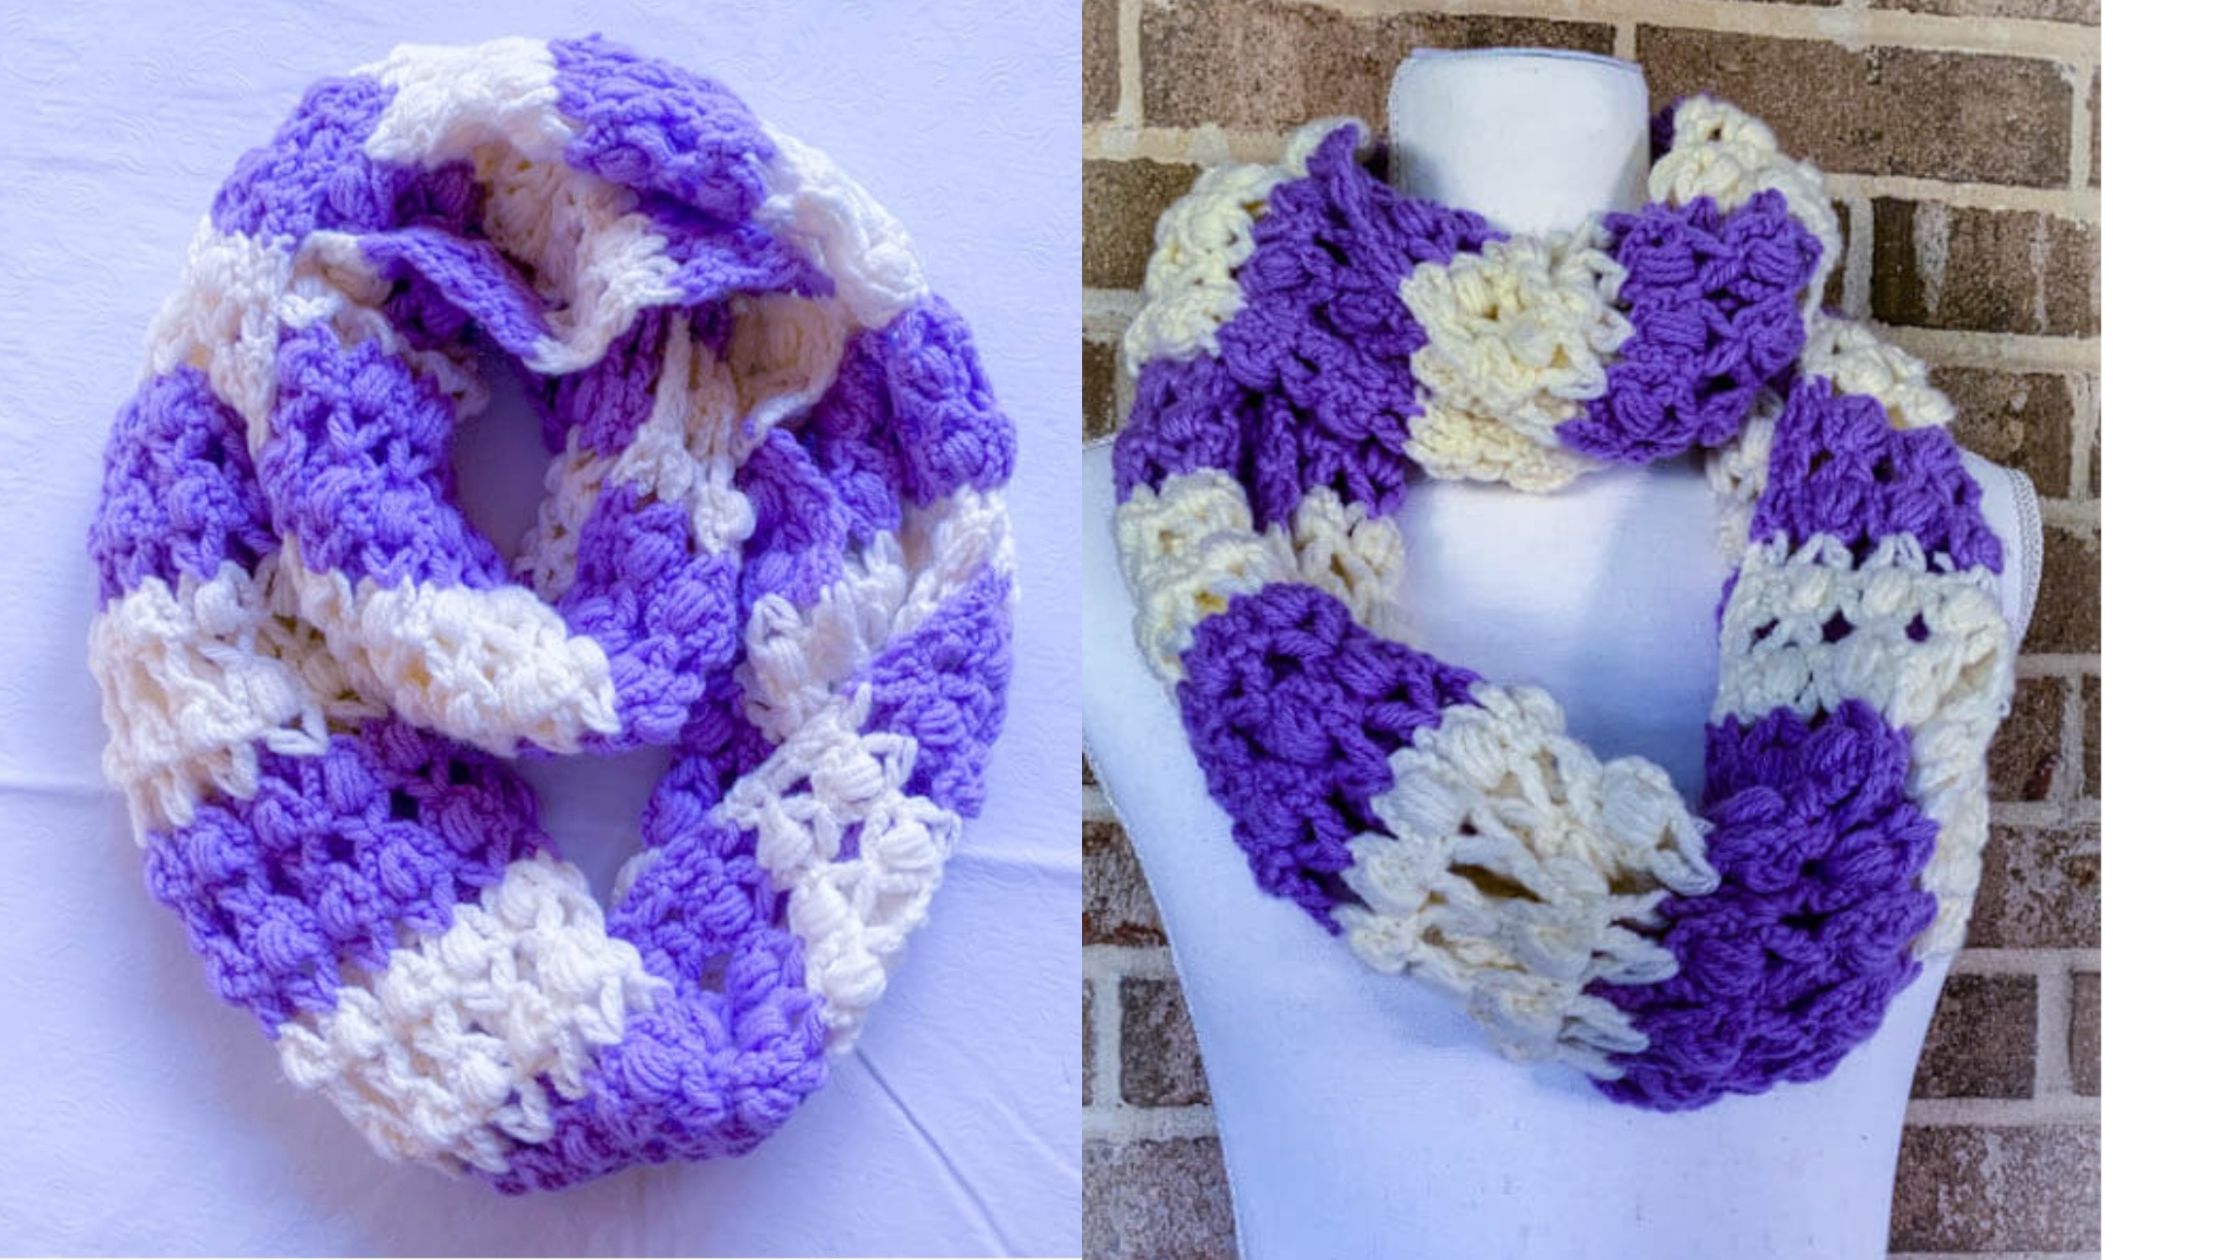 Infinity Crochet scarf free pattern